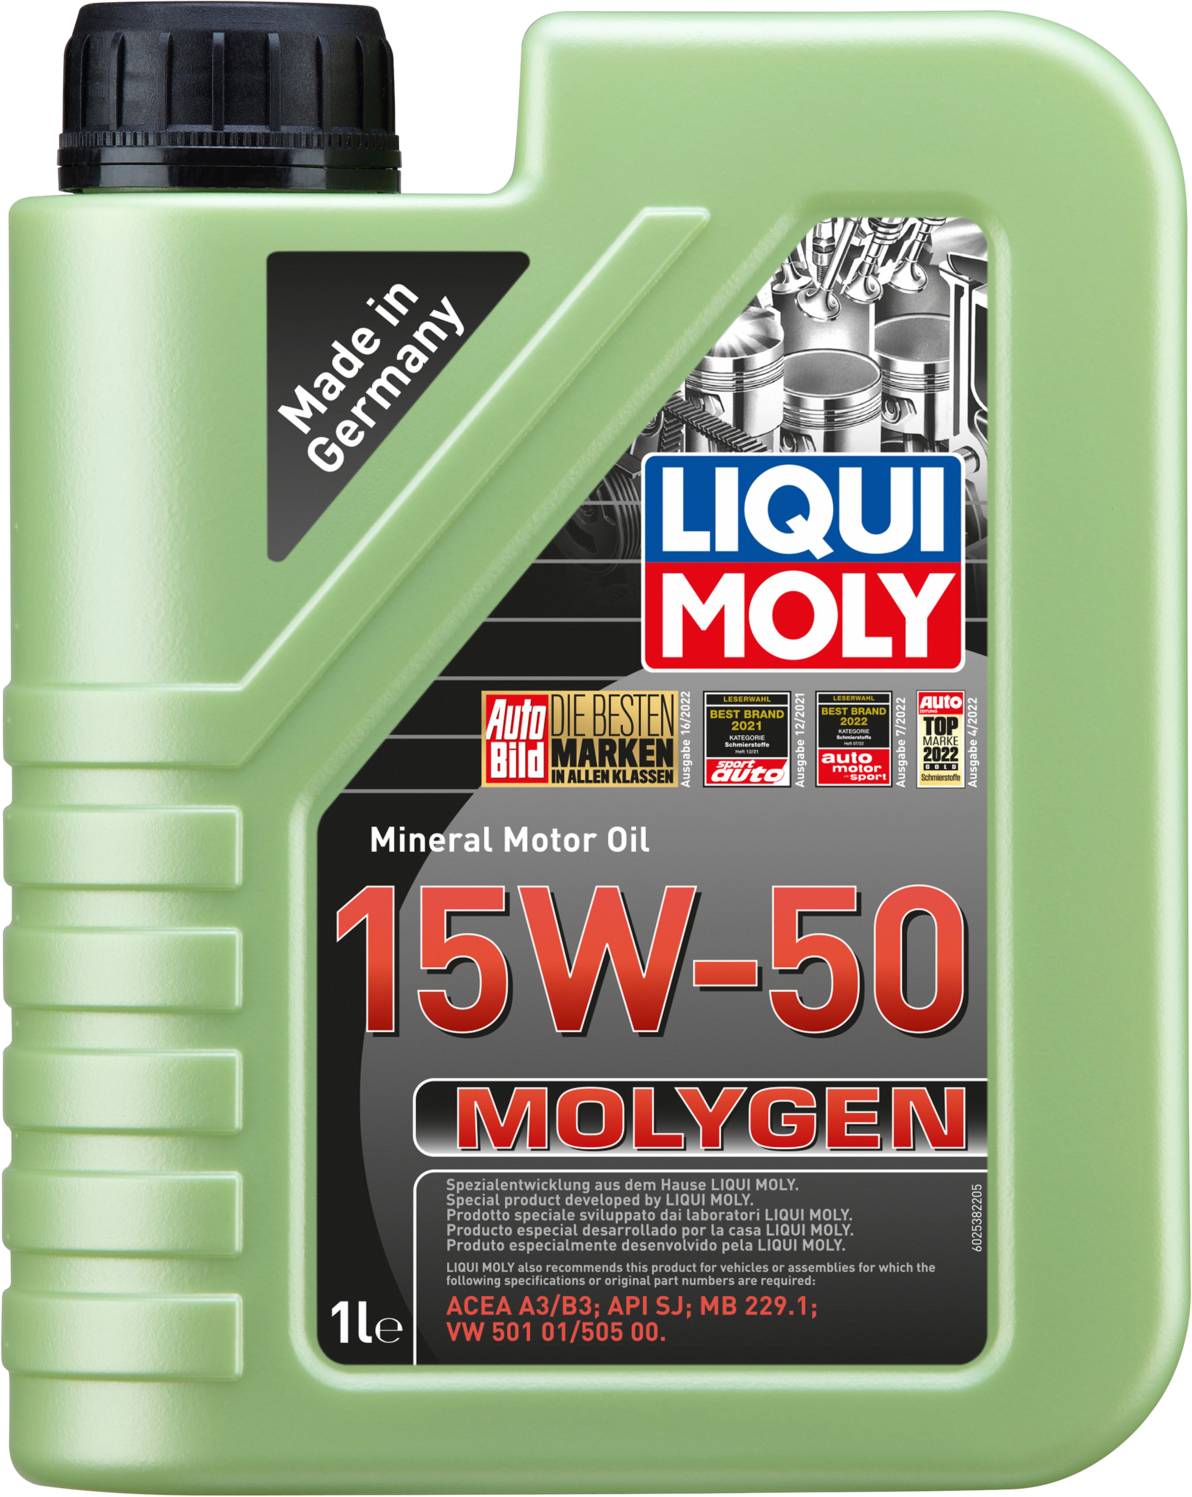 Liqui Moly Molygen 15W-50, 12 x 1 lt detail 2